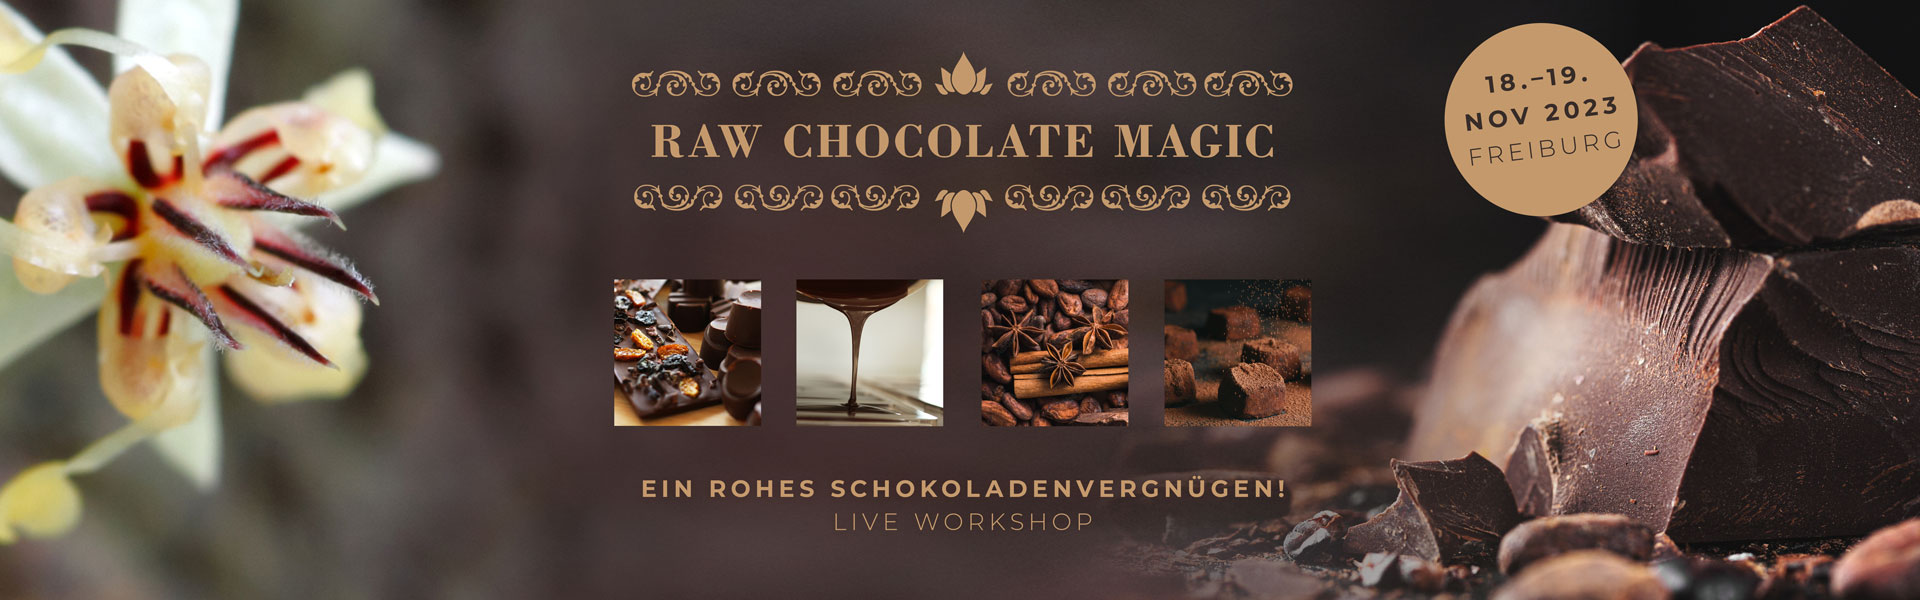 Rohkakao-Schokoladen-Workshop mit Yeshi Choedon in Freiburg